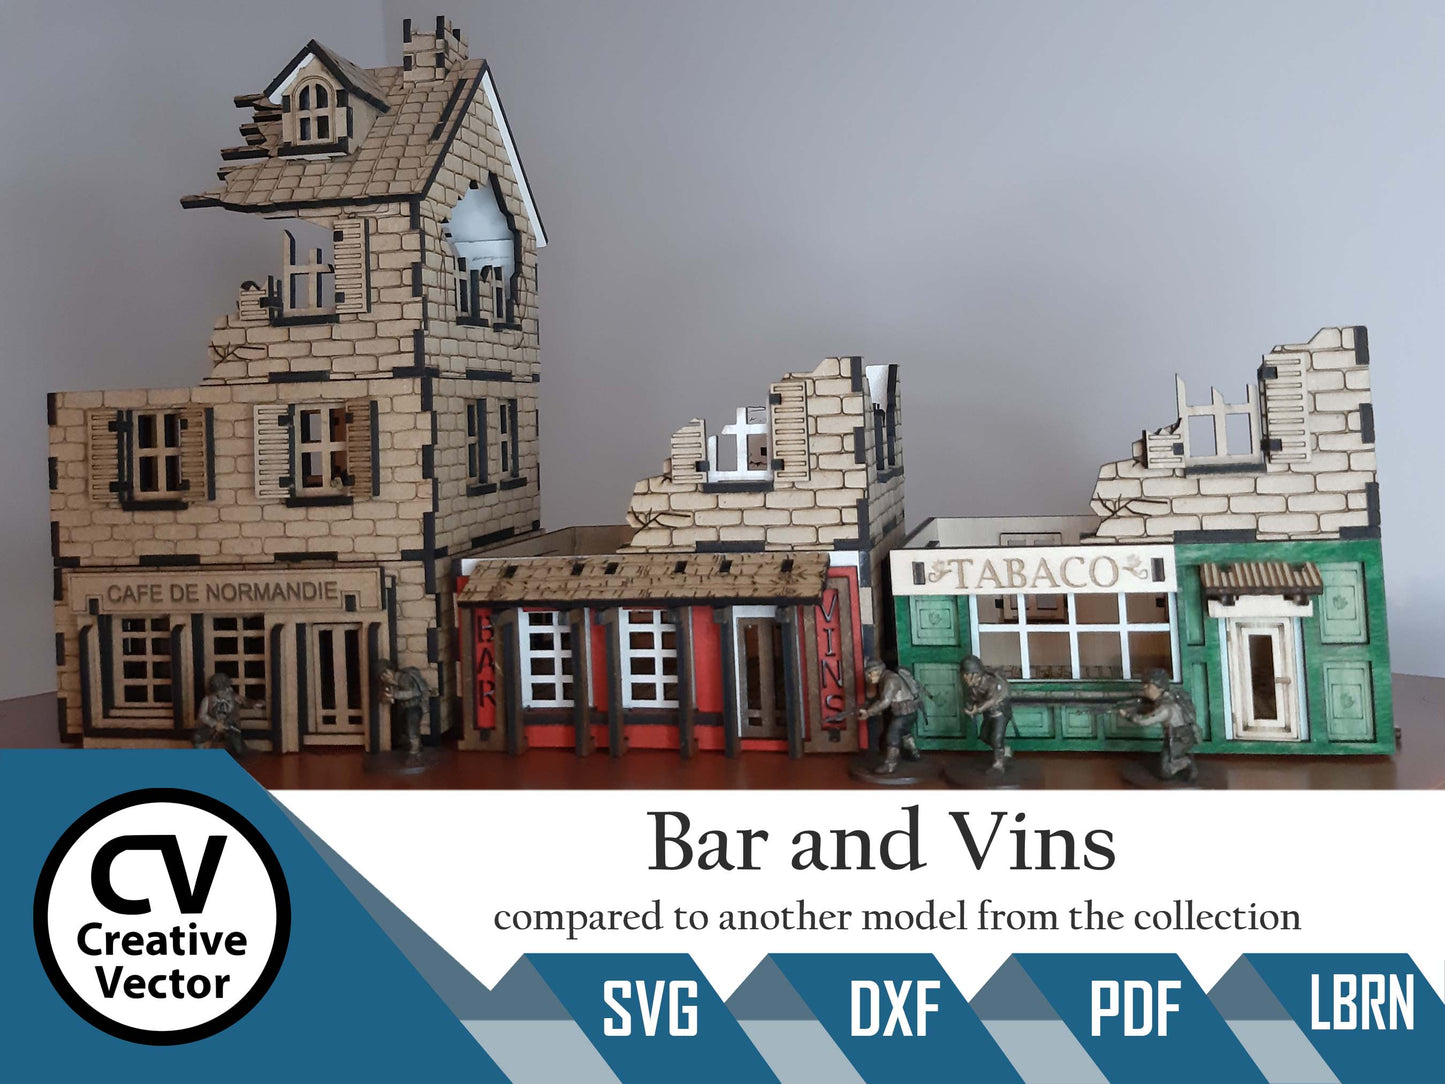 Vins Restaurant Bar in scale 28mm for game Bolt Action